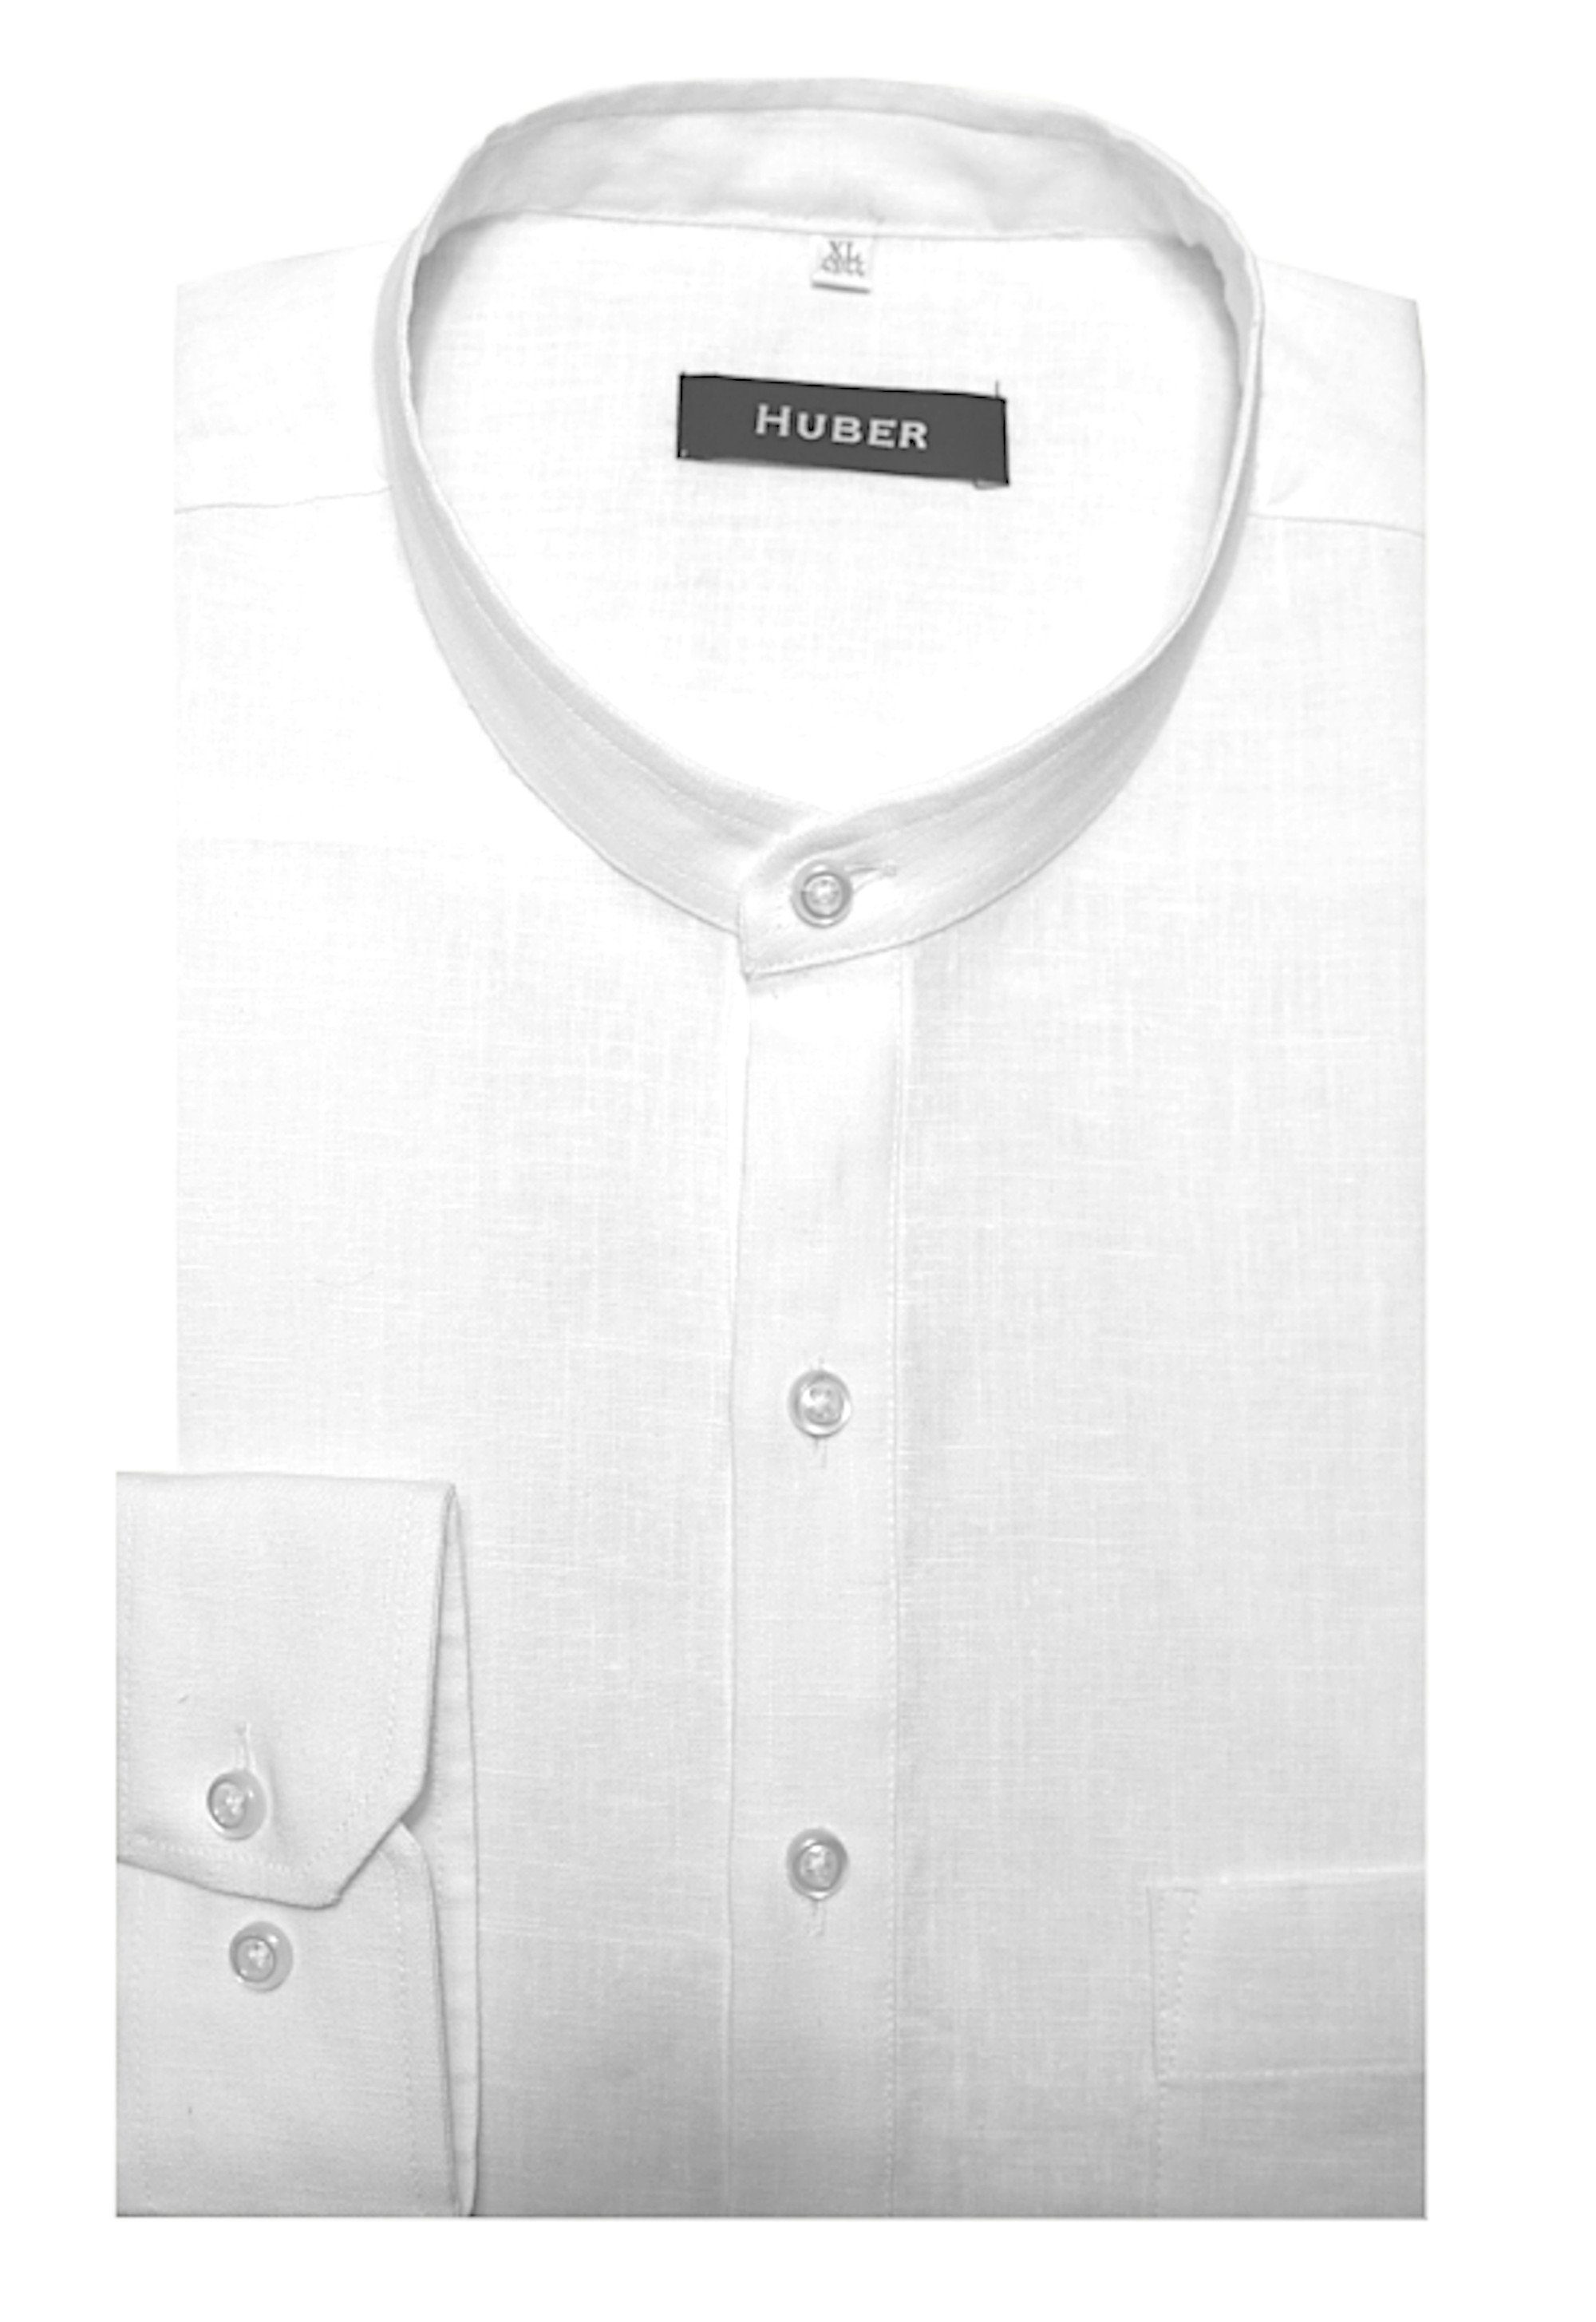 Huber Hemden Leinenhemd HU-0501 Schlupfhemd in 100% Regular weiß Leinen EU Stehkragen, mit Made